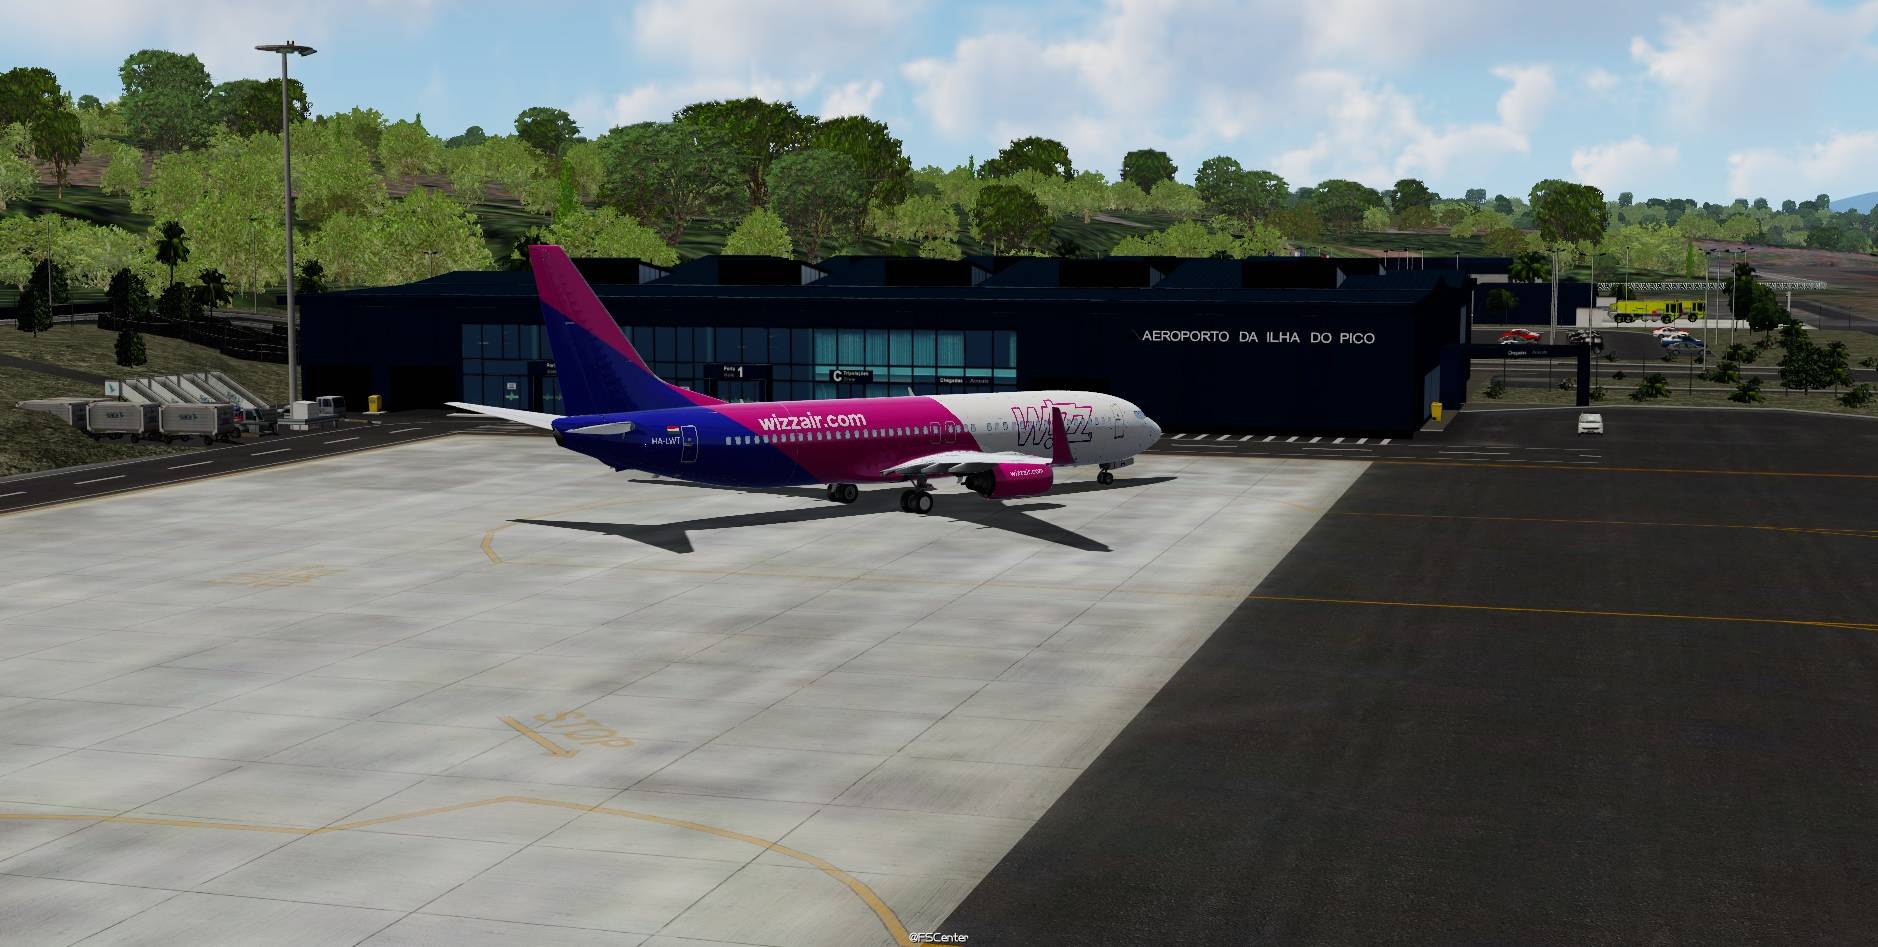 LPPI - Portual Pico Island Airport